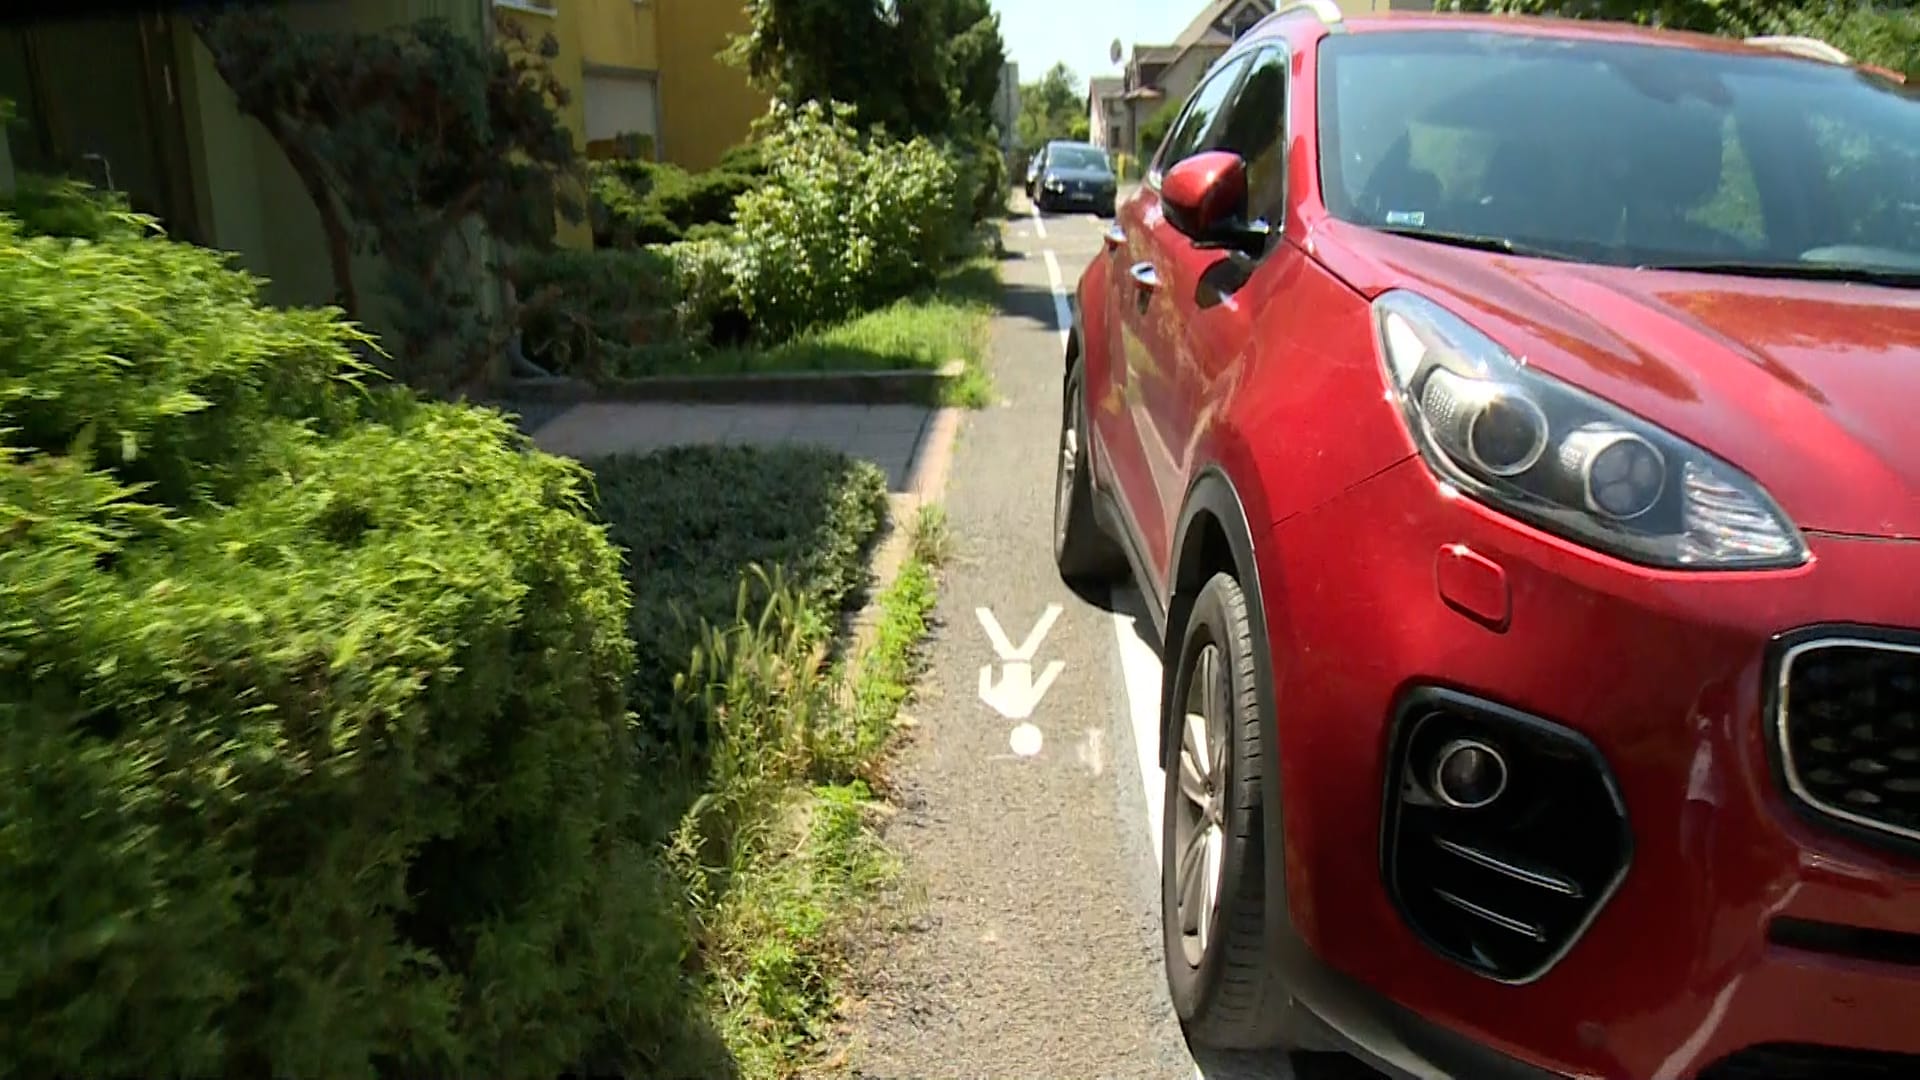  V Libni přidáním parkovacích míst zúžili chodník na půl metru.